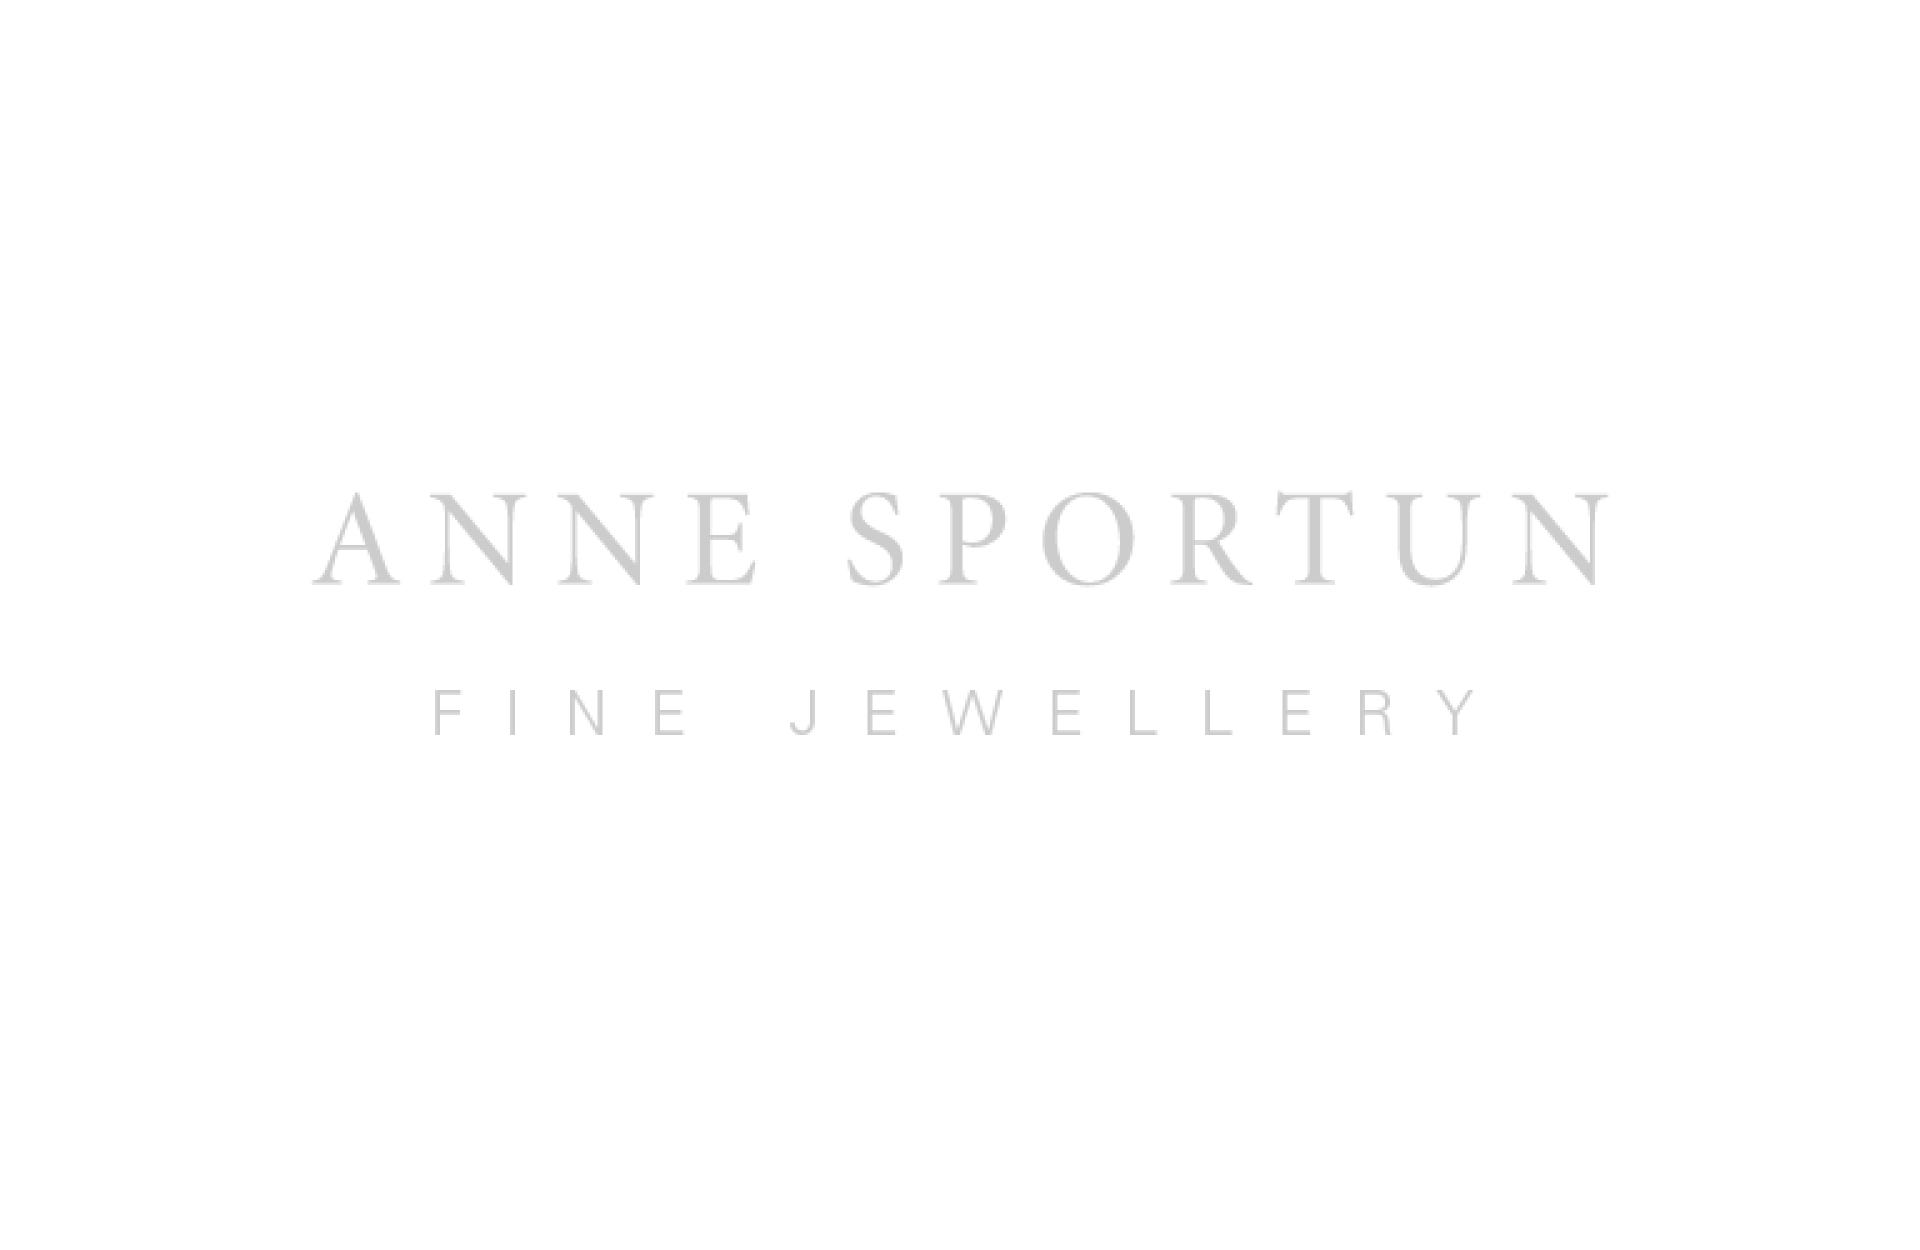 Anne Sportun - anne-sportun_feature_fine-jewellery_logo_4col